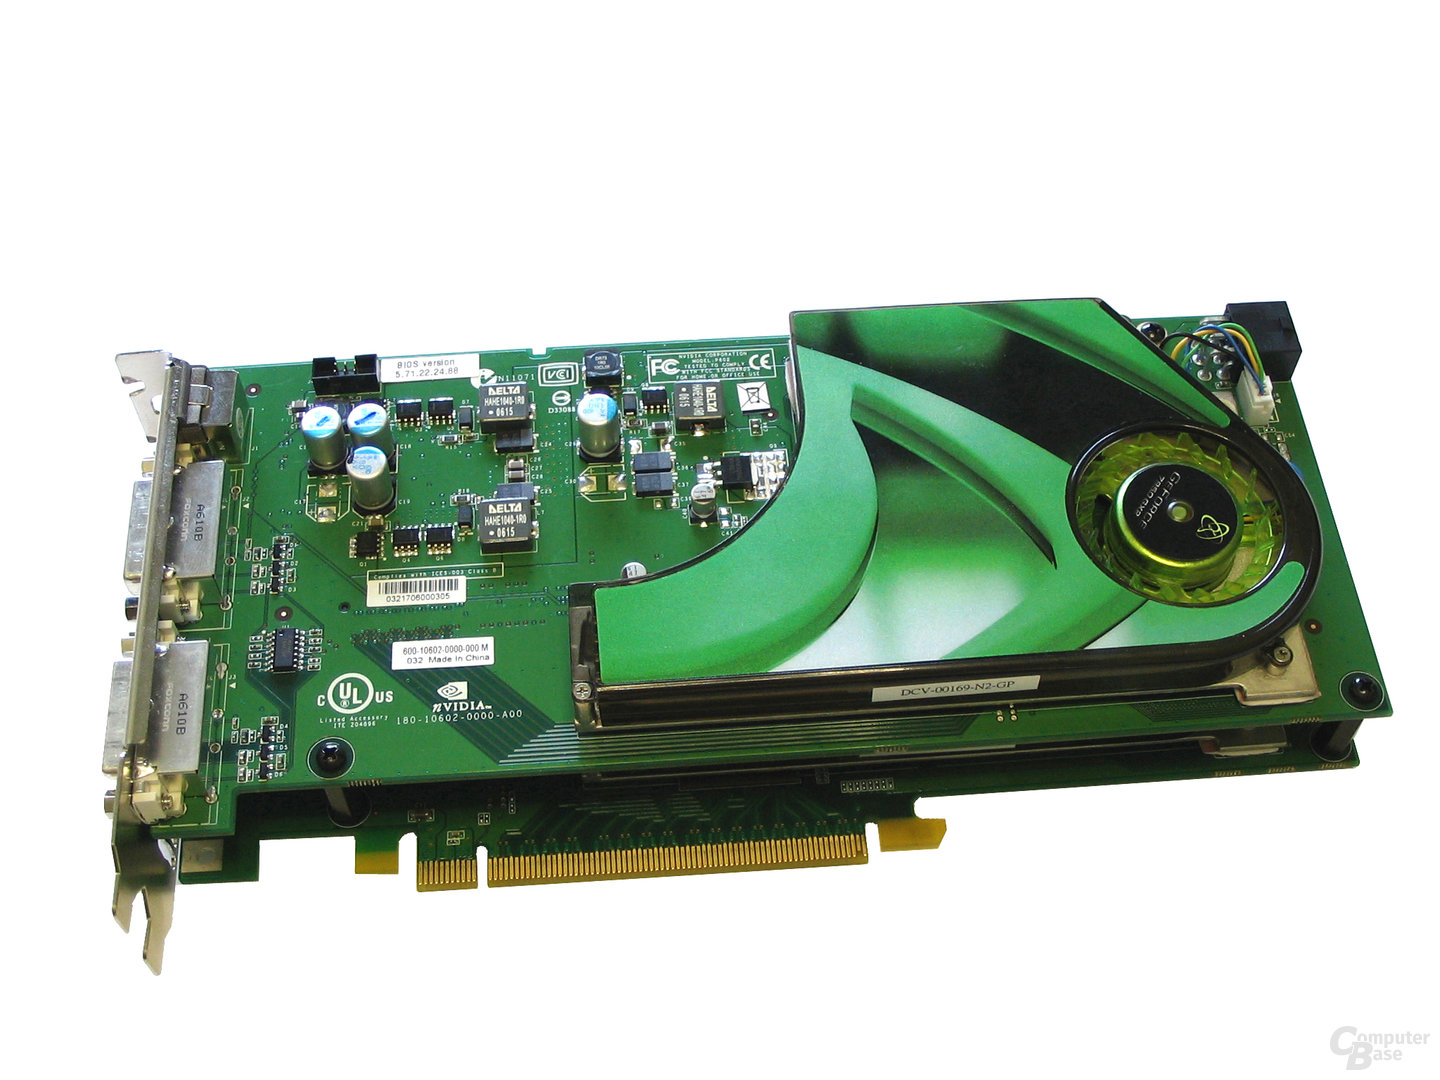 XFX GeForce 7950 GX2 M570 XXX